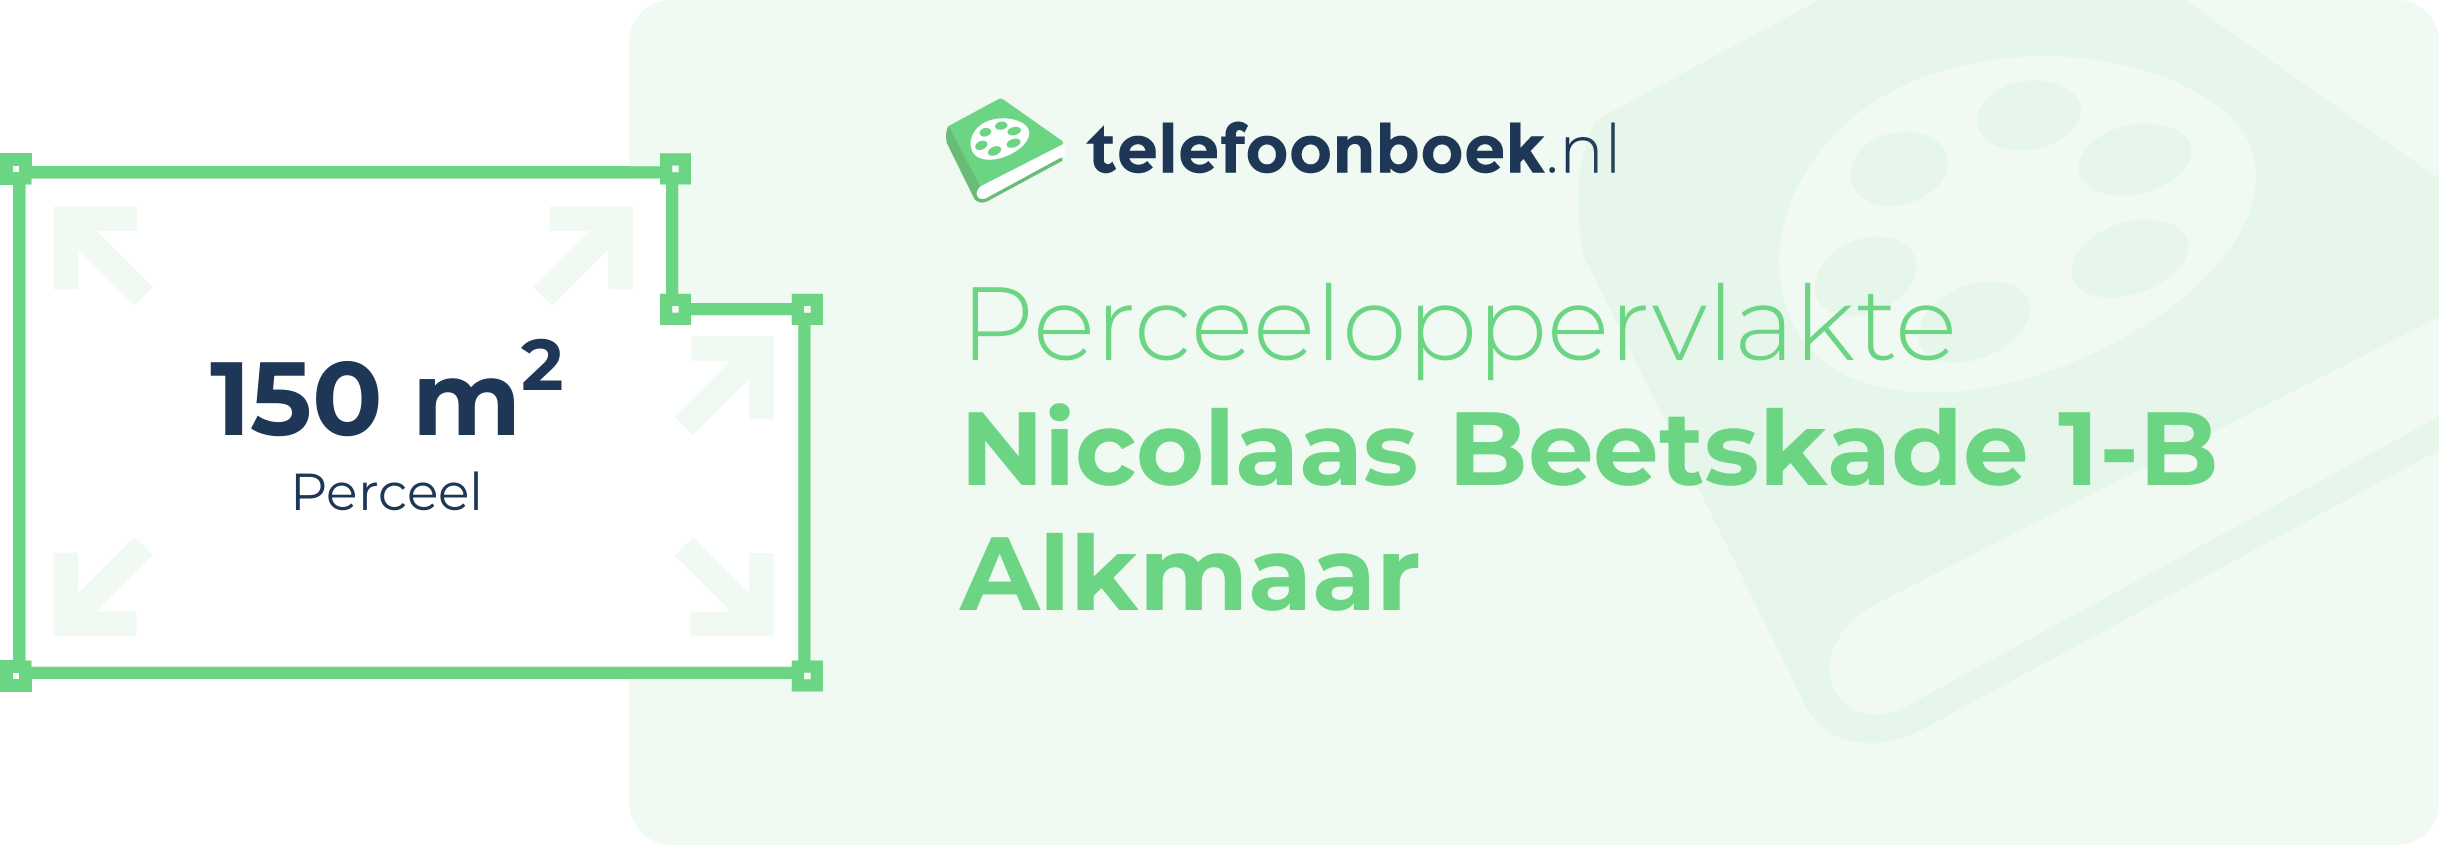 Perceeloppervlakte Nicolaas Beetskade 1-B Alkmaar